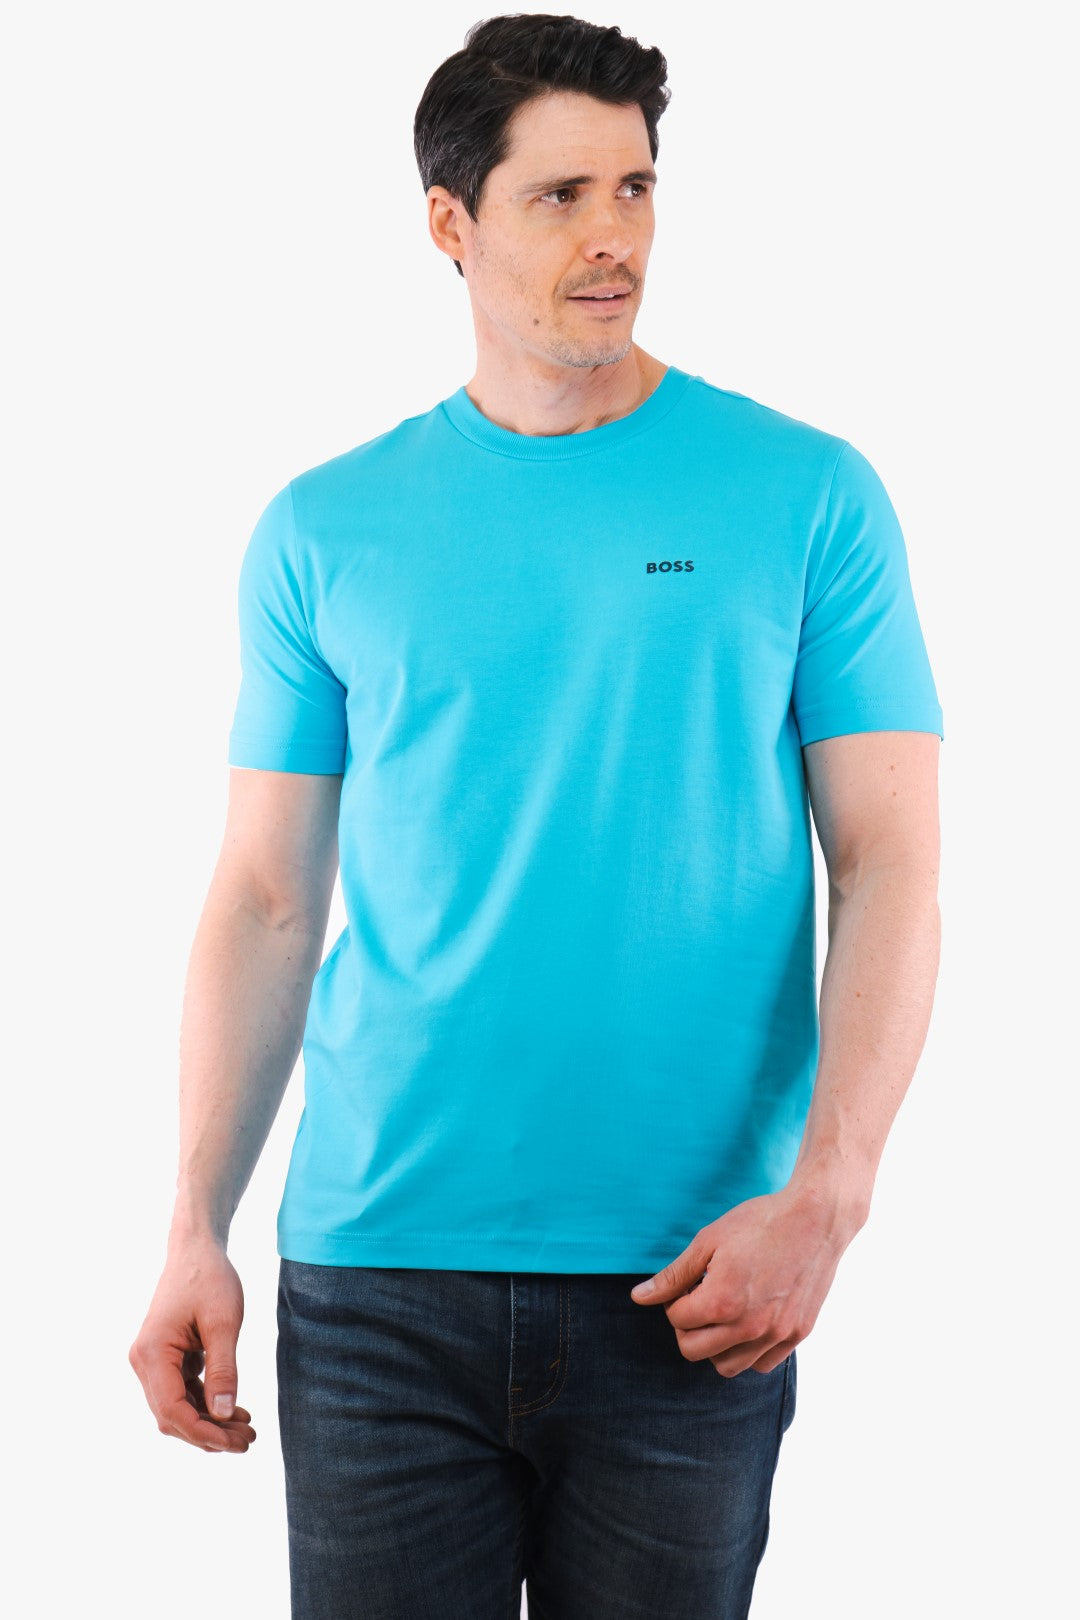 Blue Hugo Boss Tee T-Shirt